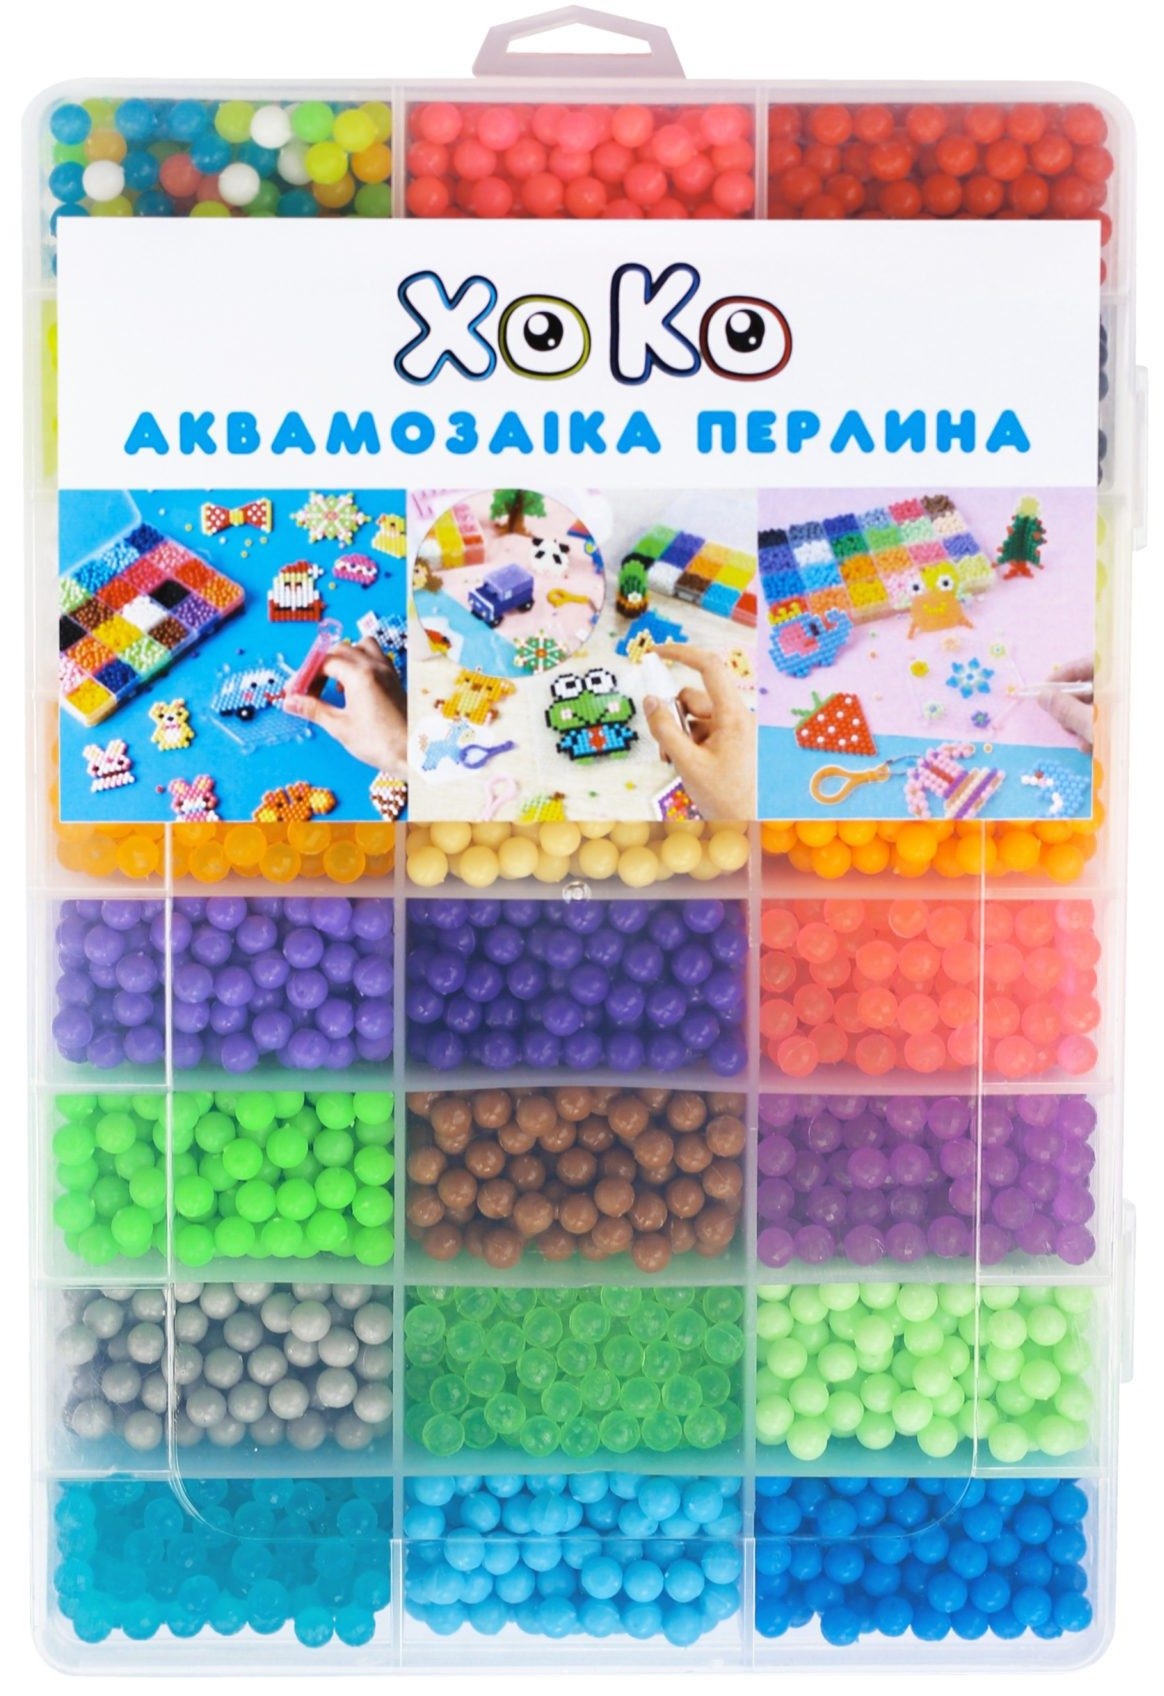 Аквамозаика XOKO Жемчужина 5500 (XK-PRL-55) в Киеве